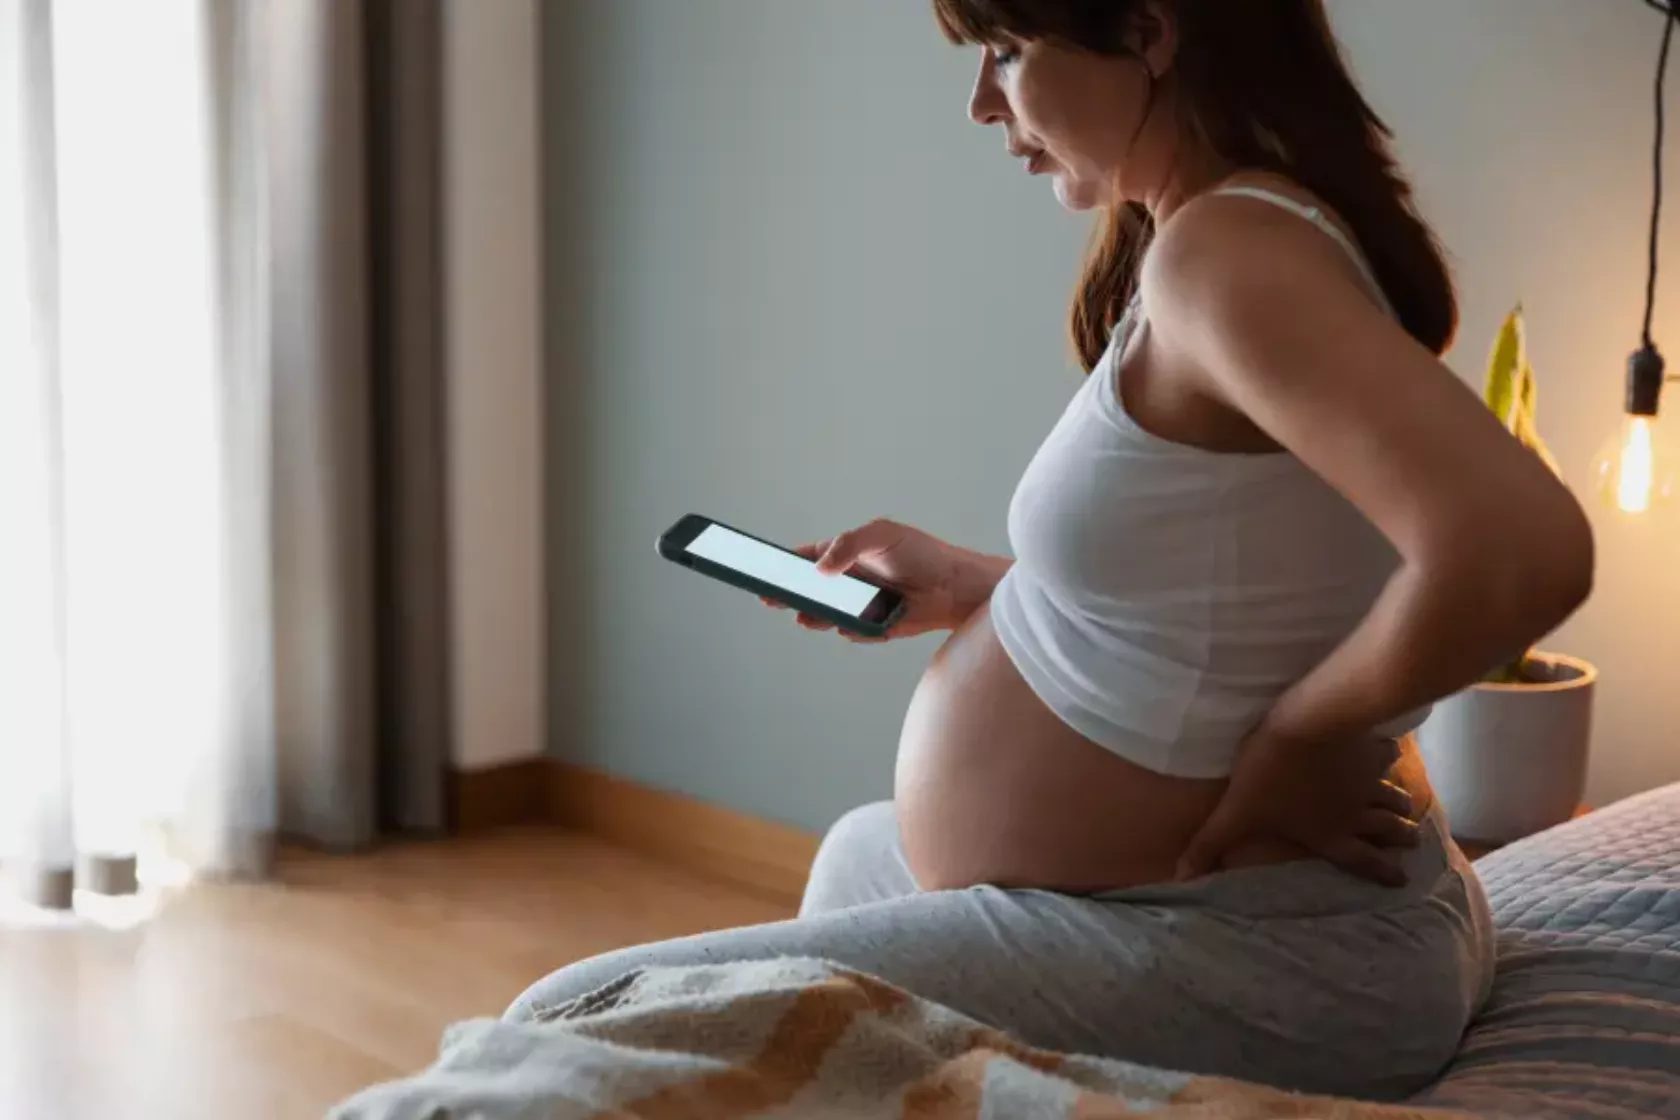 Schwangere Frau sitzt mit Handy in der Hand auf dem Bett